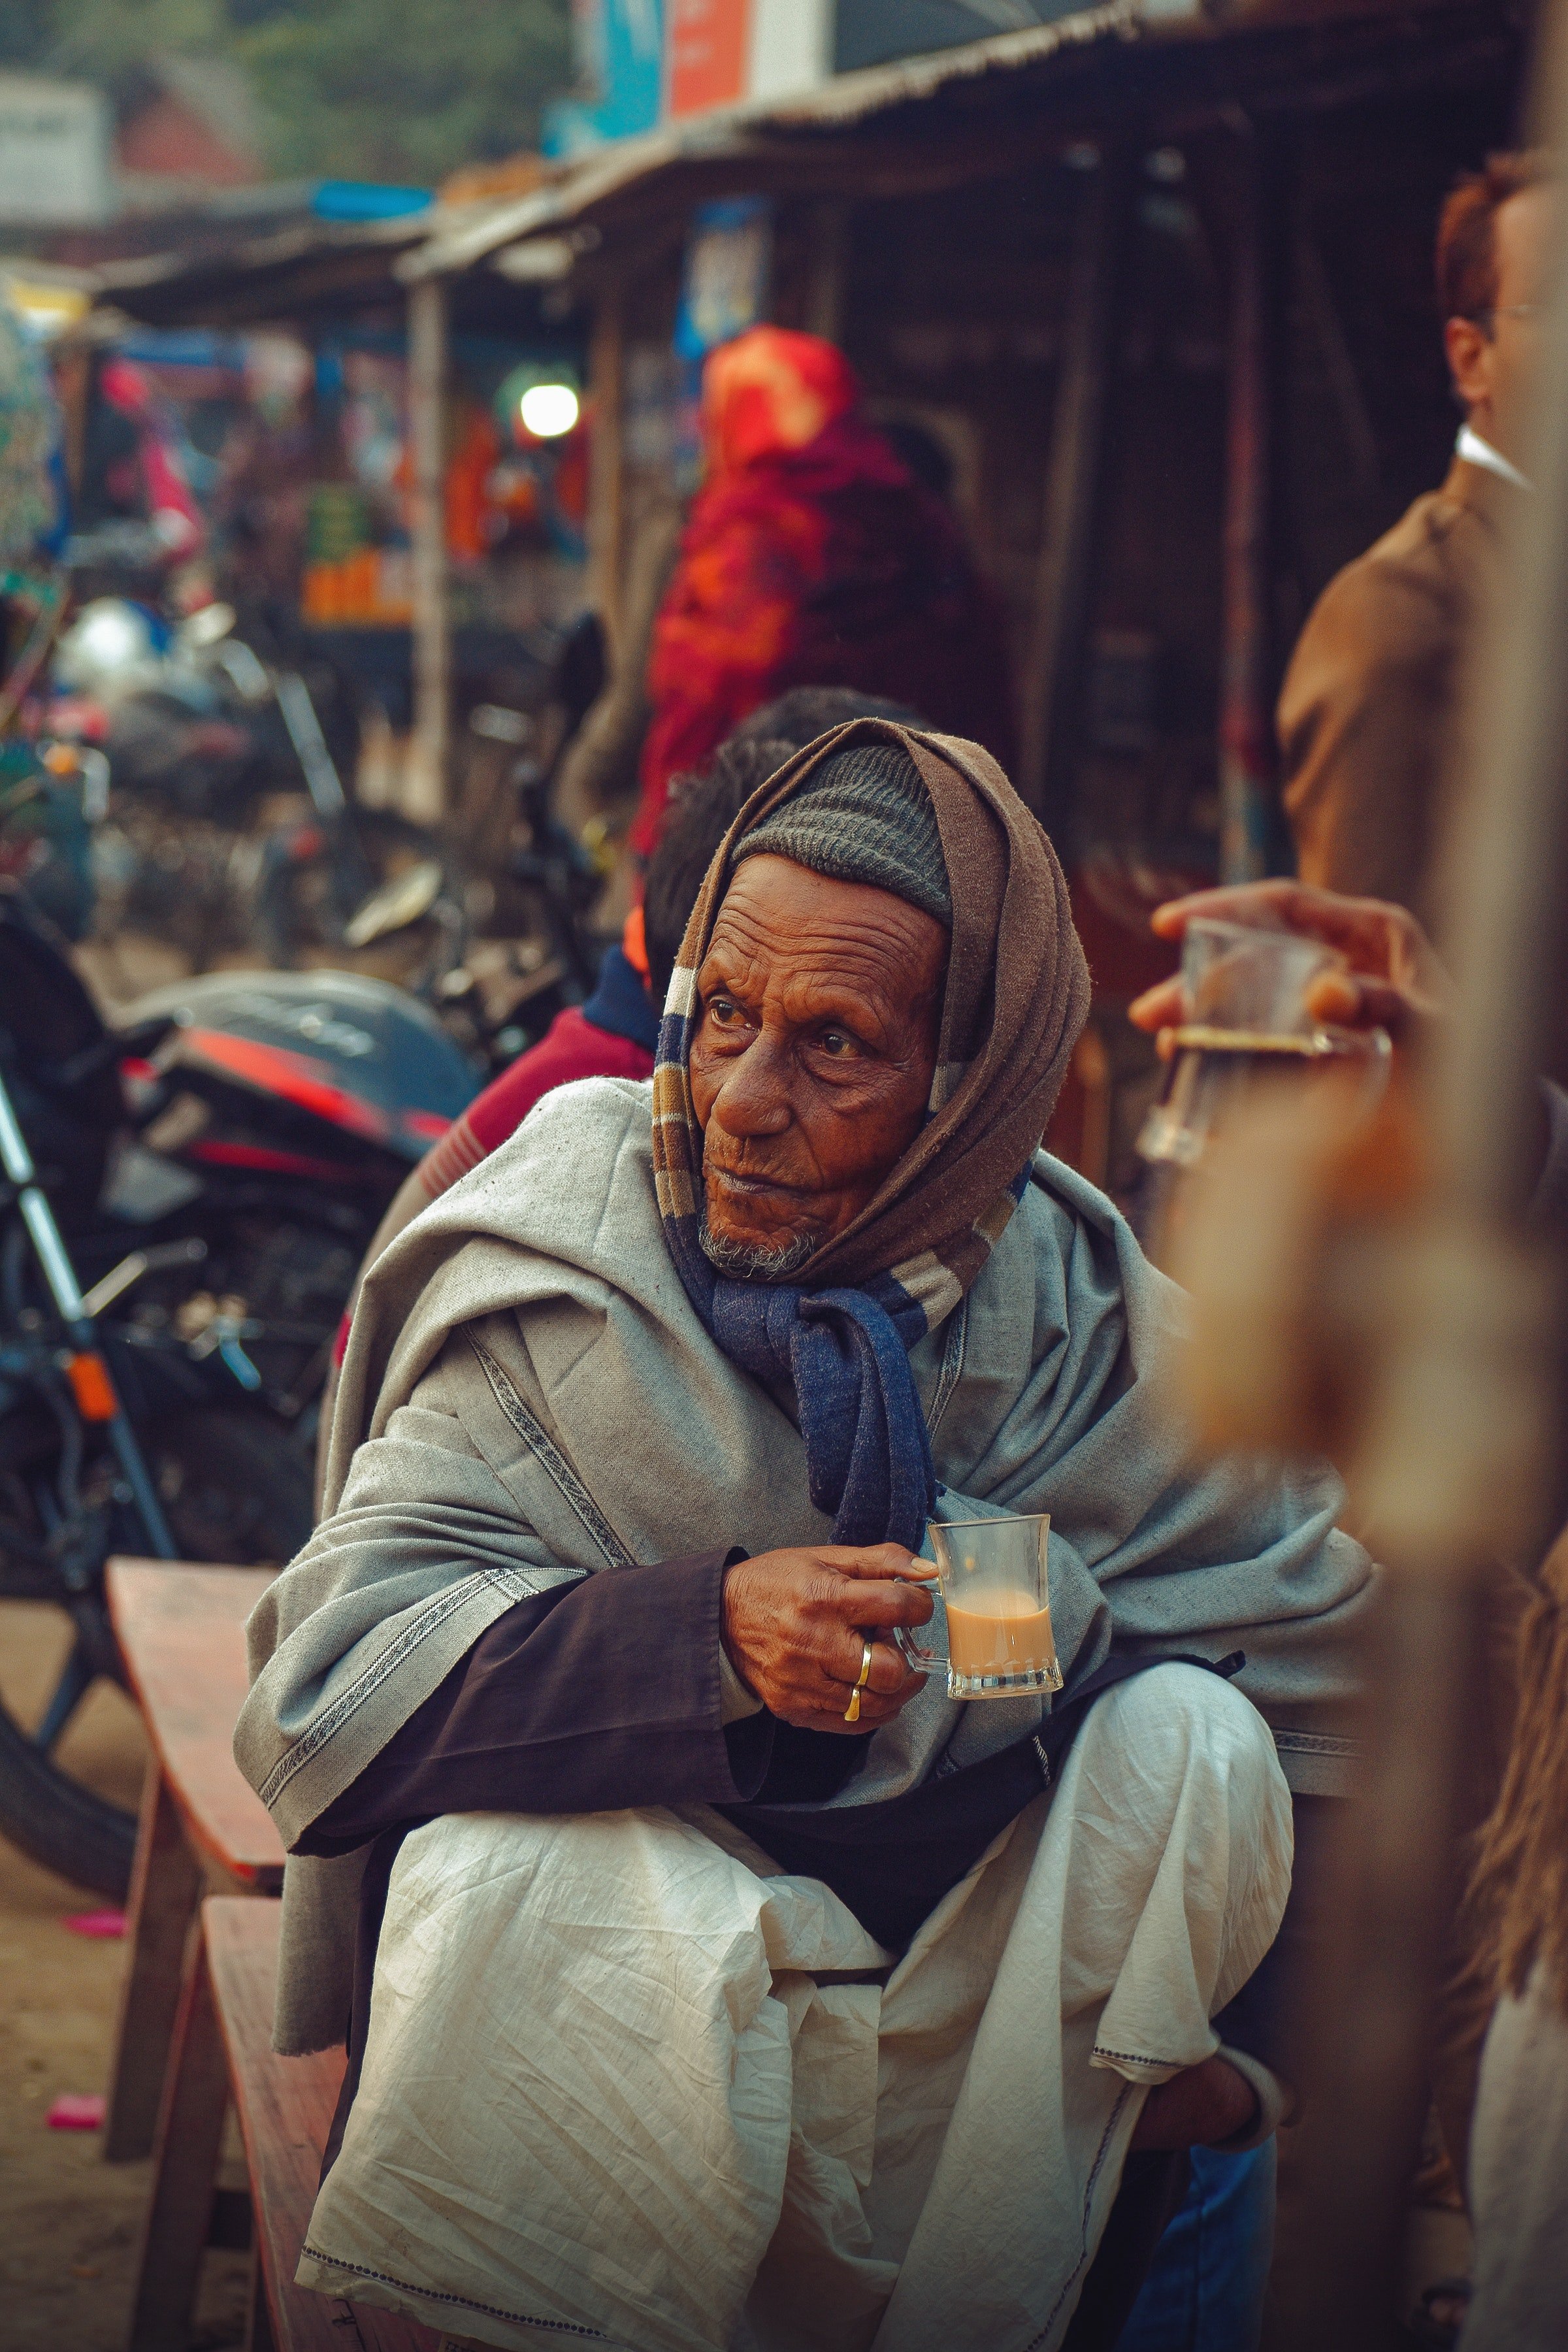 Ein alter Mann bot Elizabeth an, seine Tasse Tee zu halten, damit sie sich warm halten konnte. | Quelle: Pexels